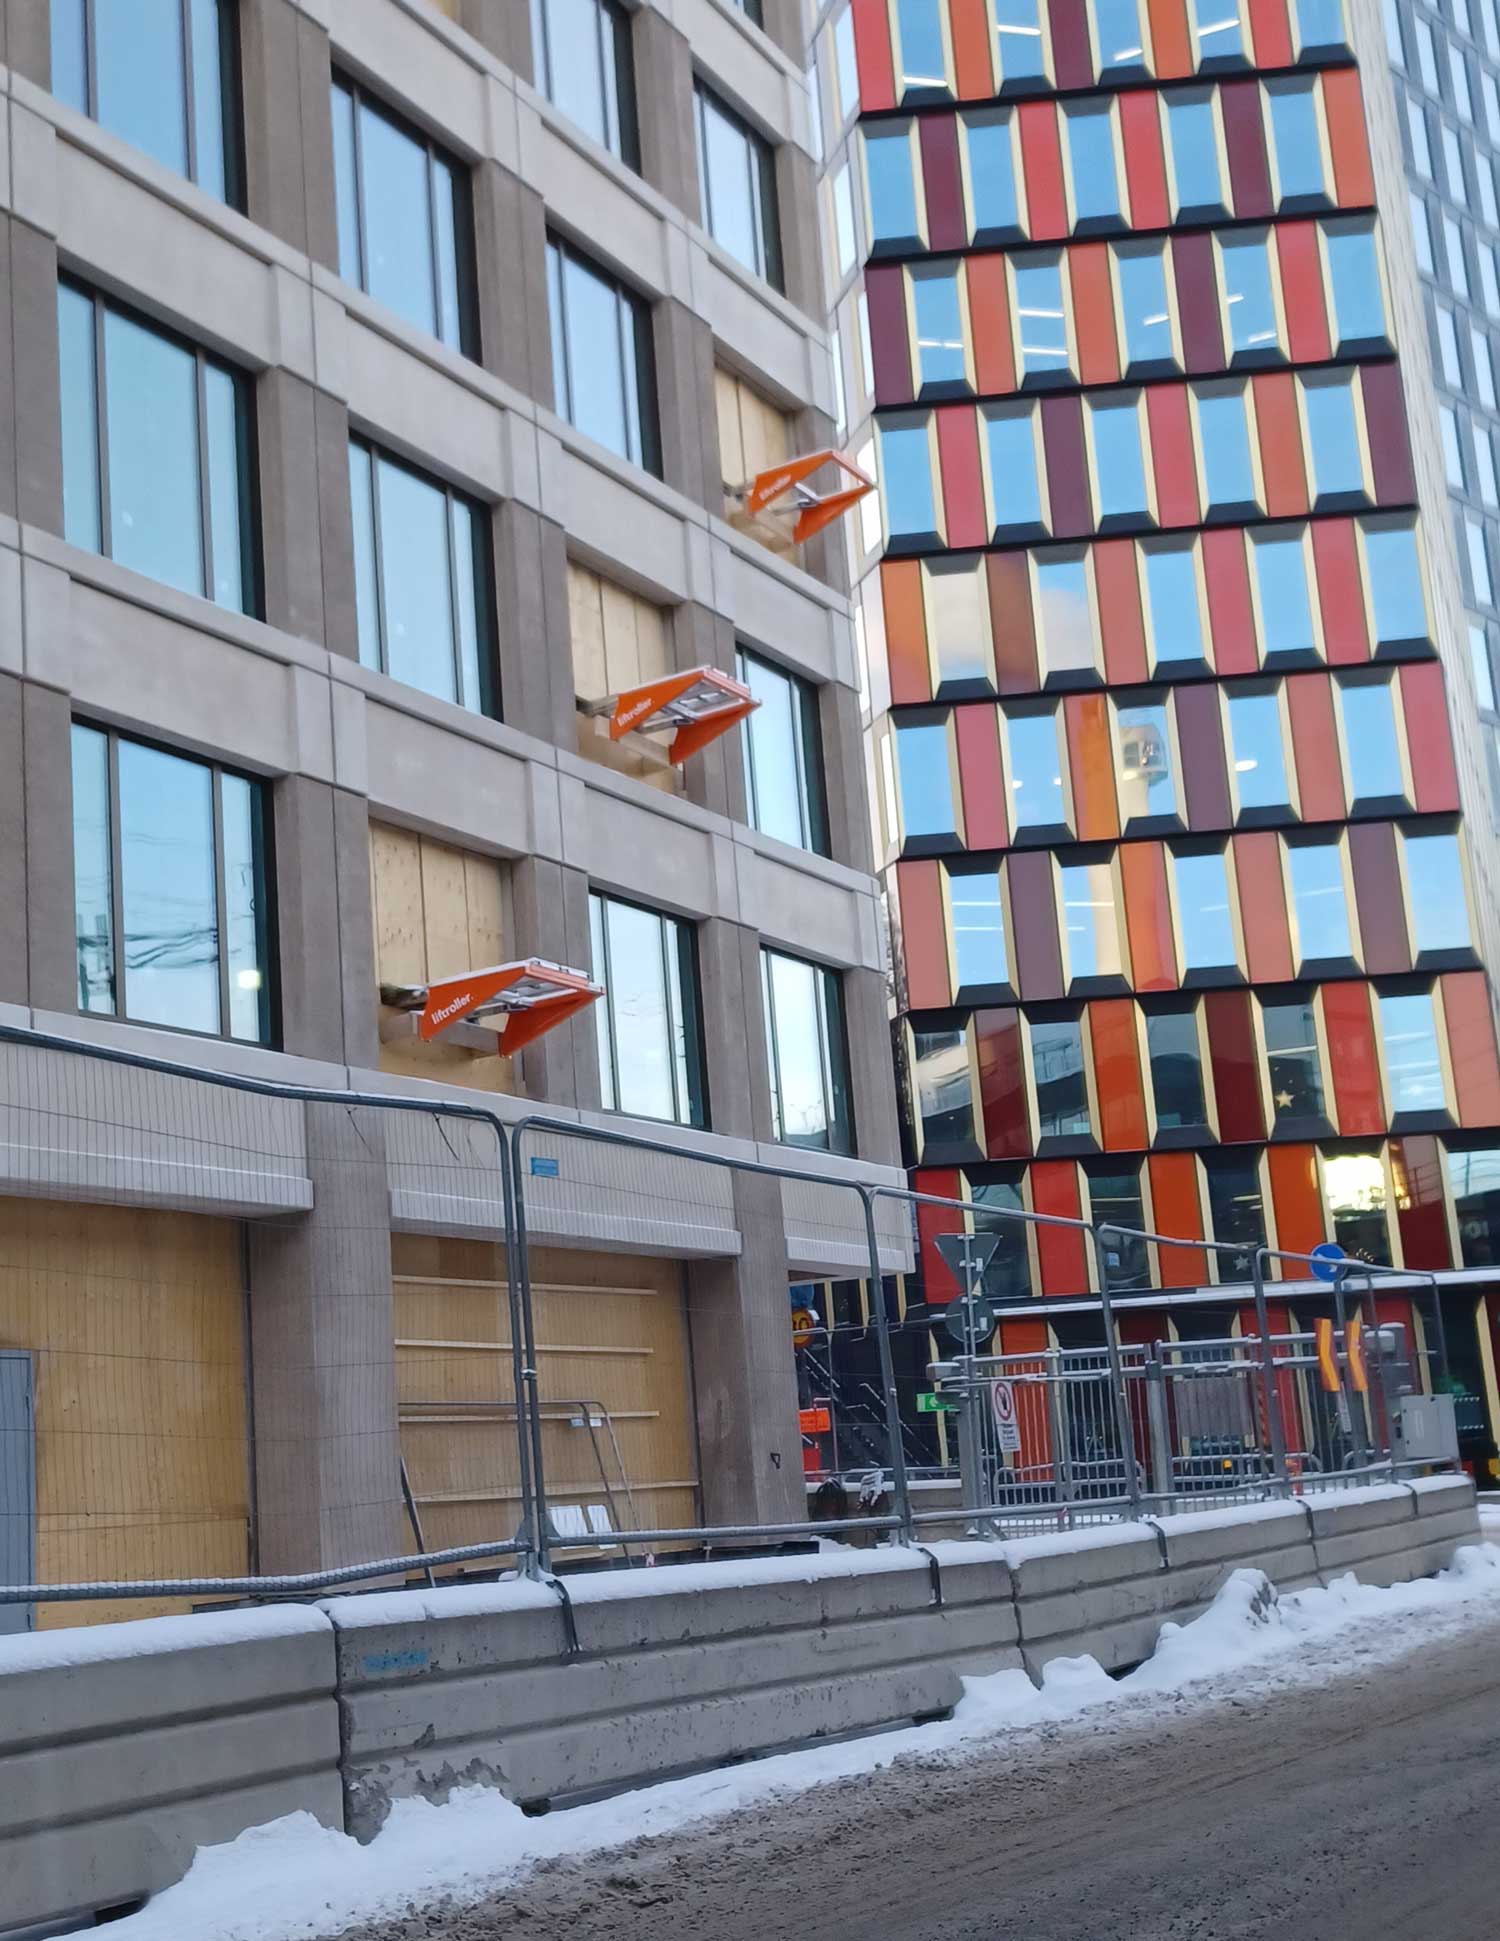 Byggeprosjektet Sthlm_02 i Stockholm med tre Liftrollere på fasaden